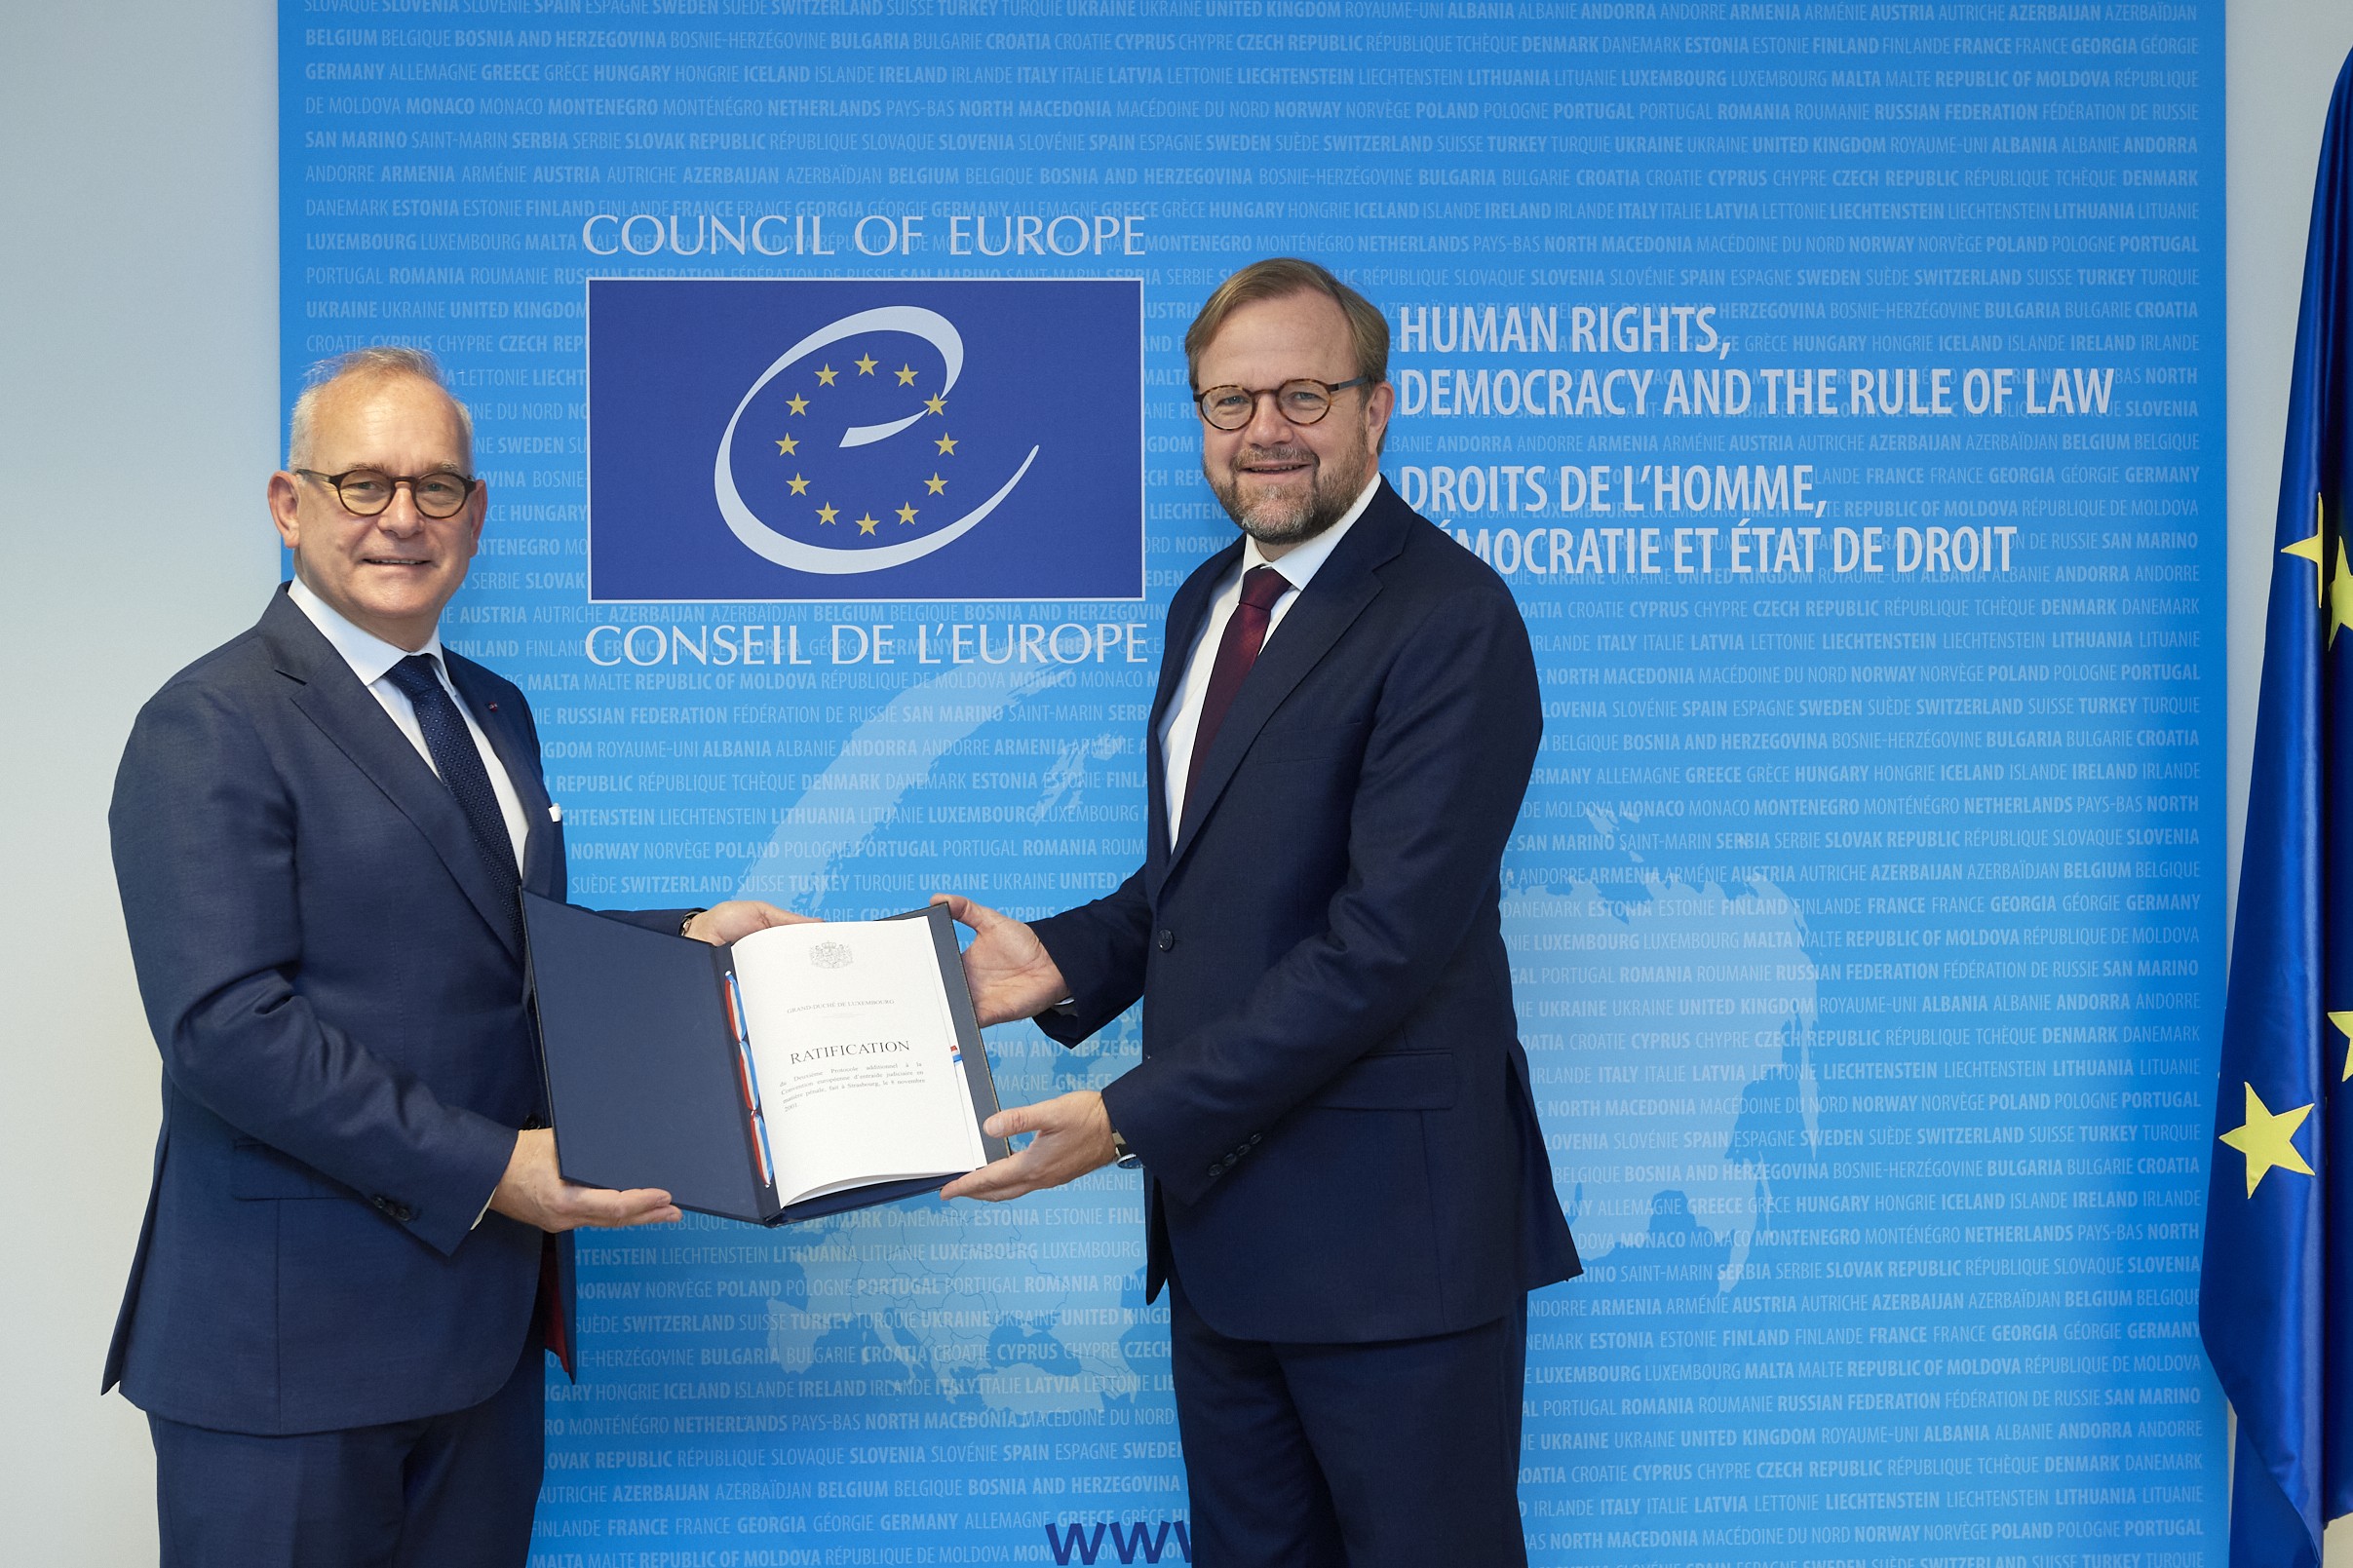 Le Luxembourg ratifie le Deuxième Protocole additionnel à la Convention européenne d'entraide judiciaire en matière pénale